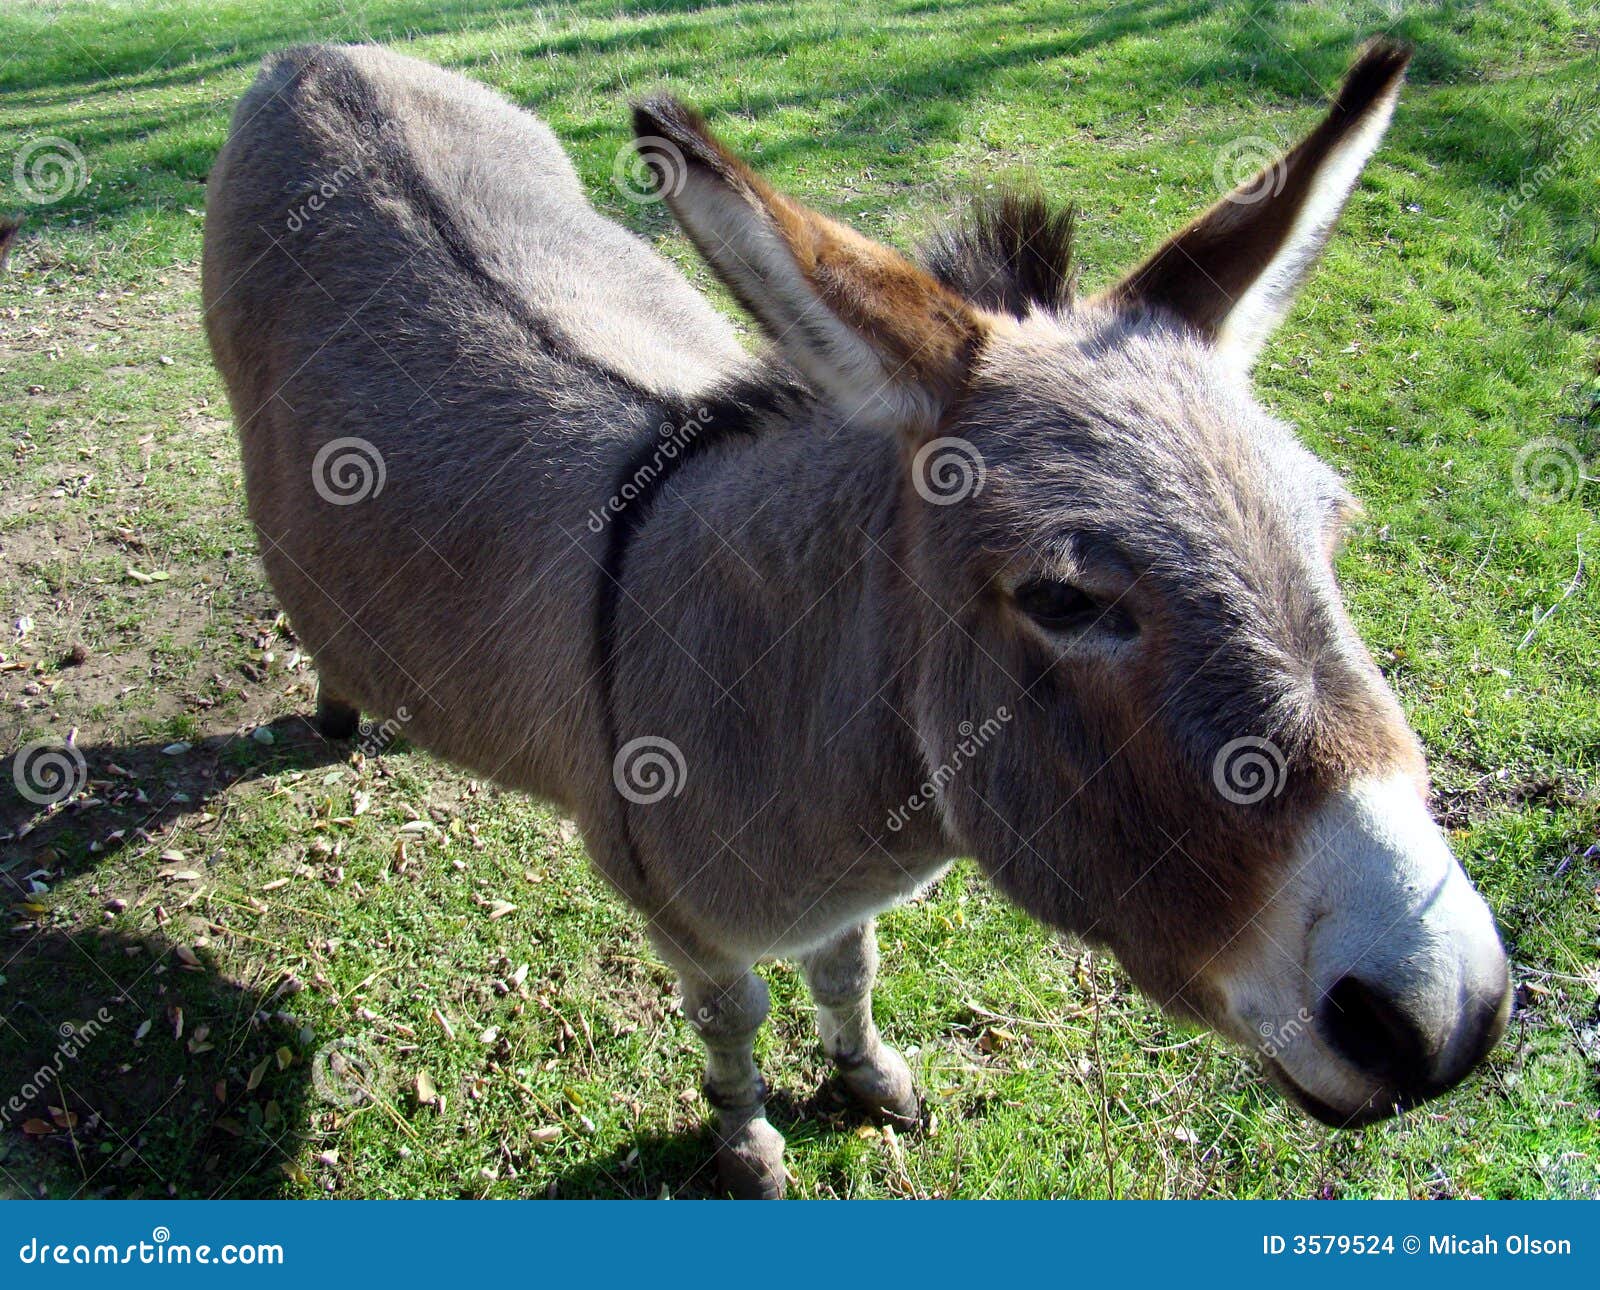 donkey in farmyard